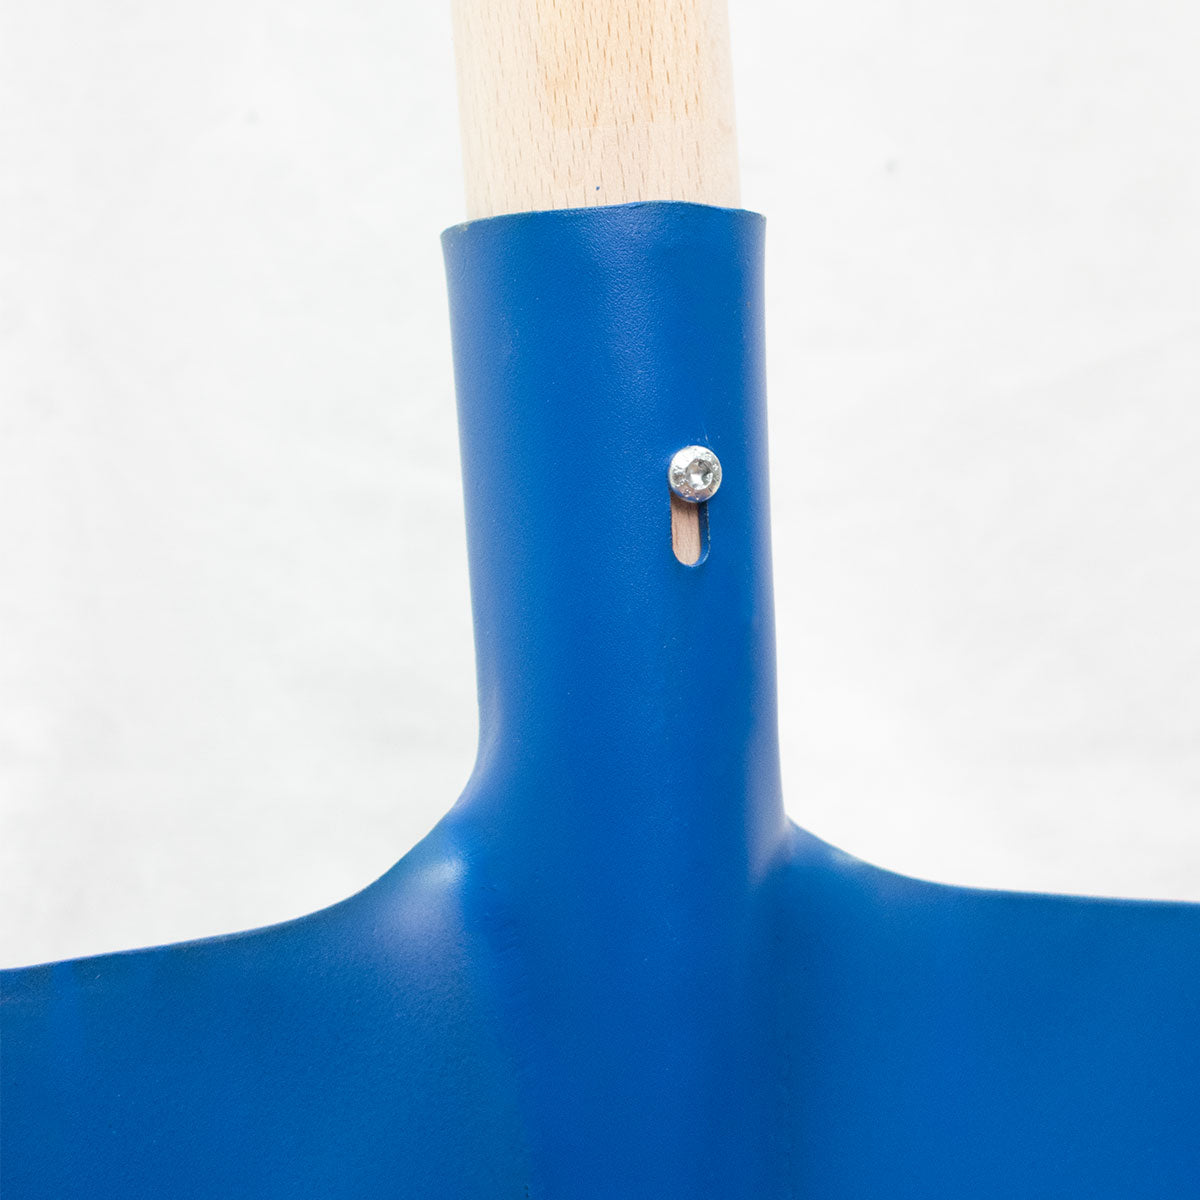 Randschaufel aus Stahlblech mit 130 cm Hartholzstiel | Blattbreite 28 cm | Made in Austria